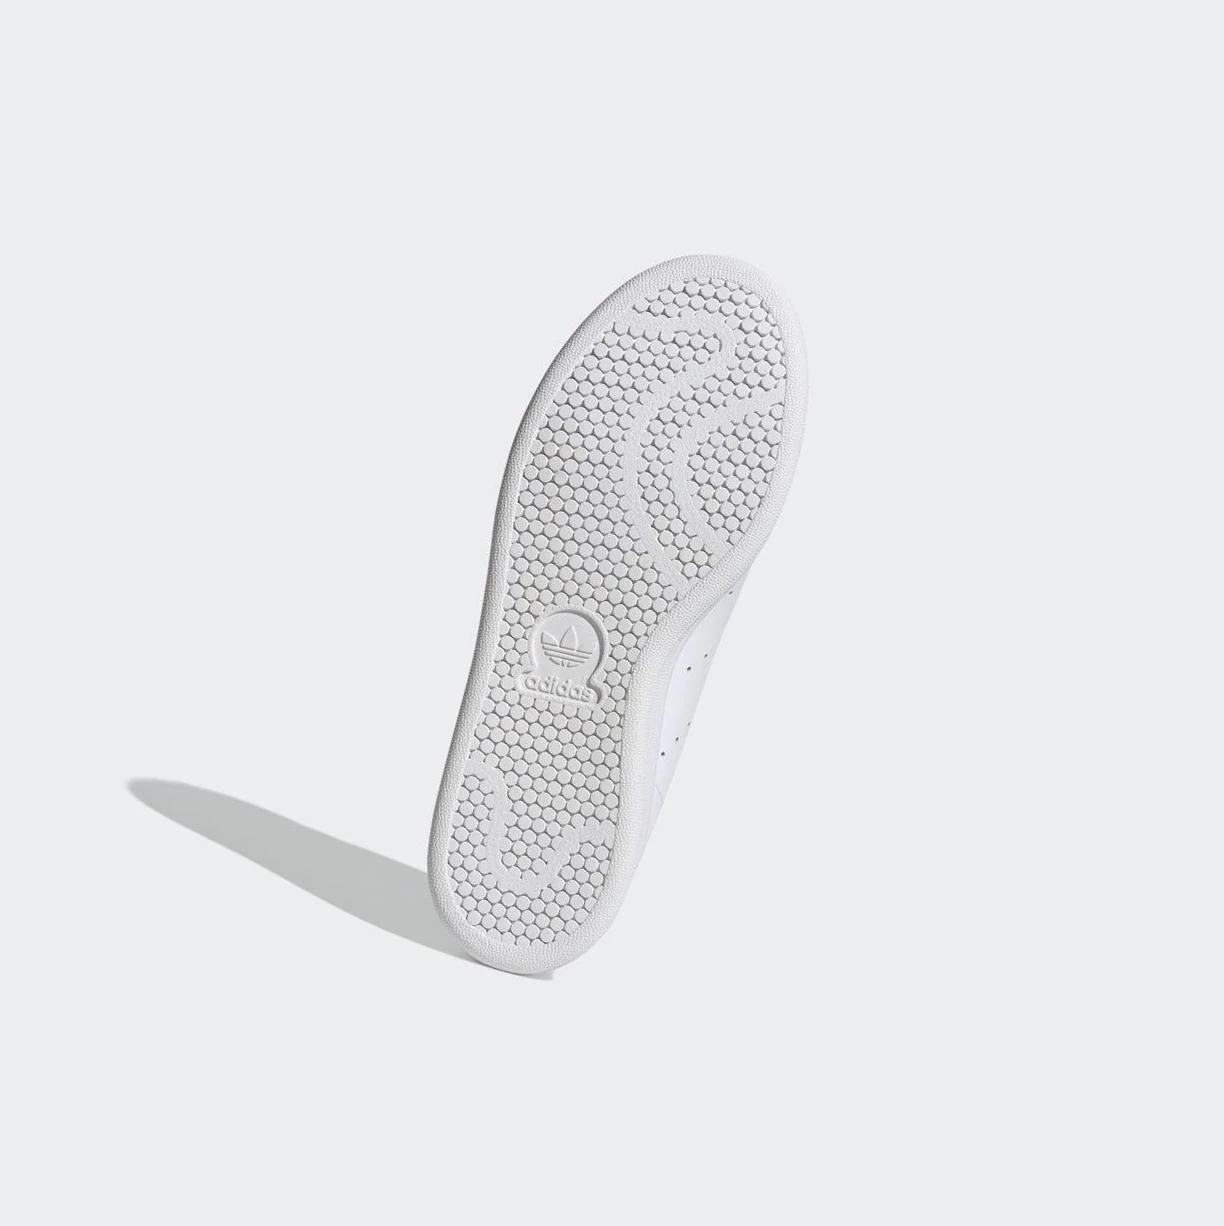 Originálne Topánky Adidas Stan Smith Damske Biele | 081SKBJWXRZ